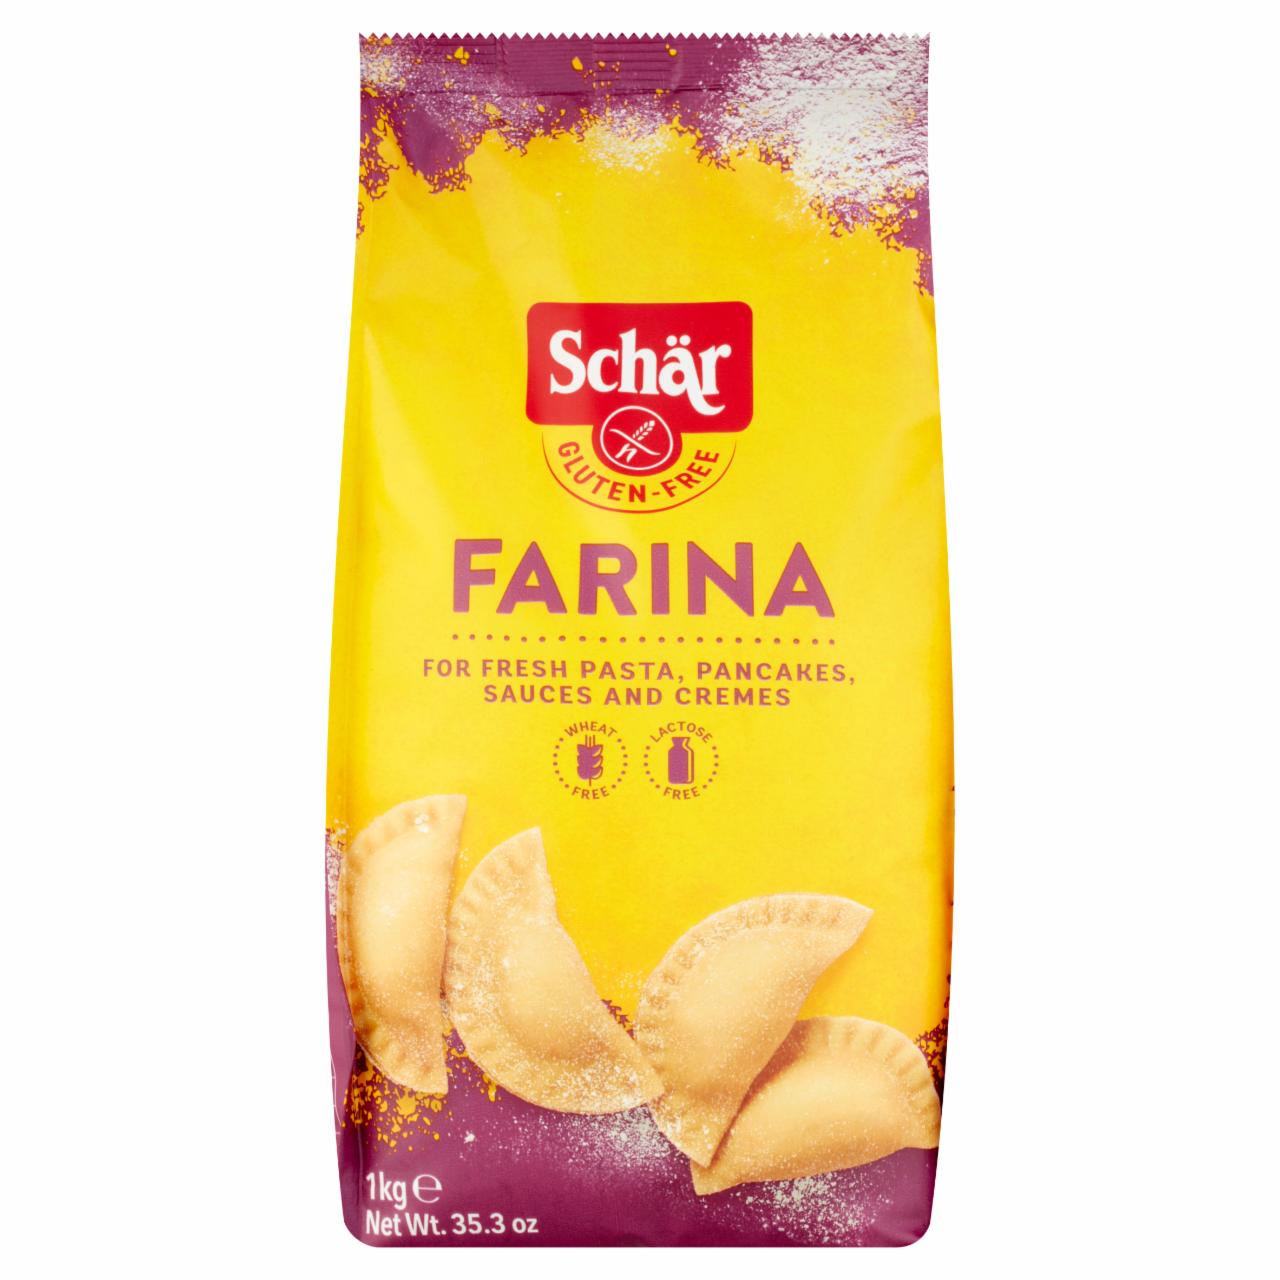 Képek - Schär Farina gluténmentes lisztkeverék 1 kg